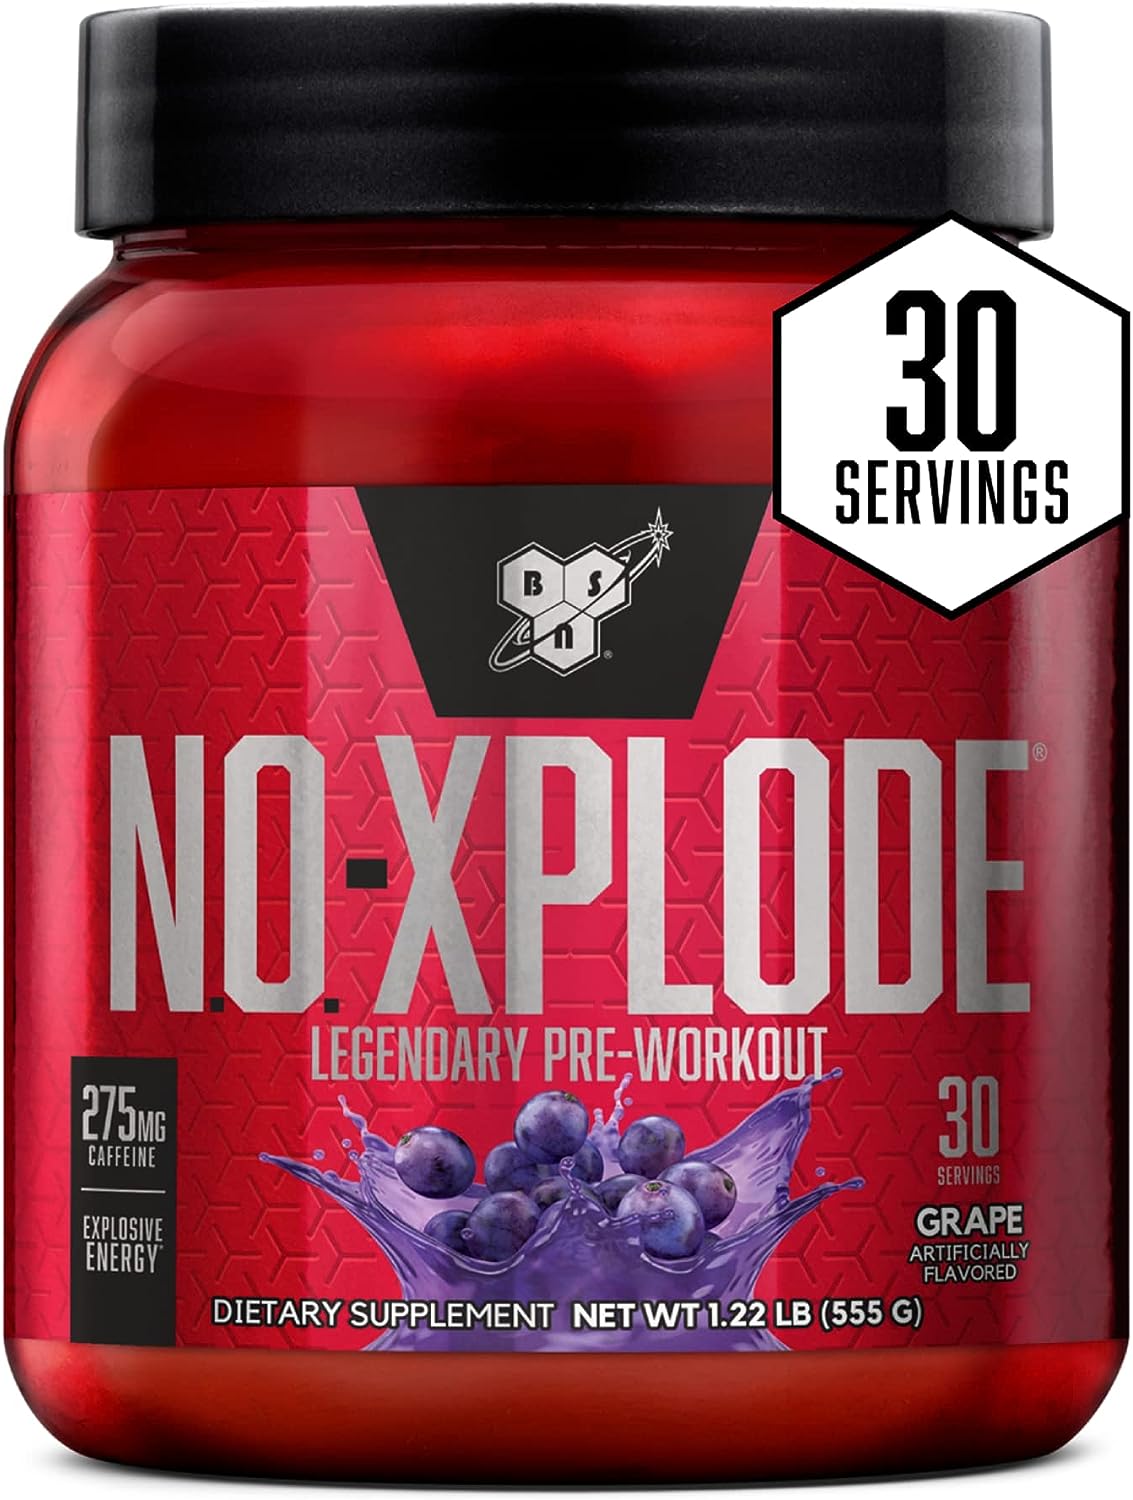 BSN N.O.-XPLODE Legendary Pre-Workout Supplement